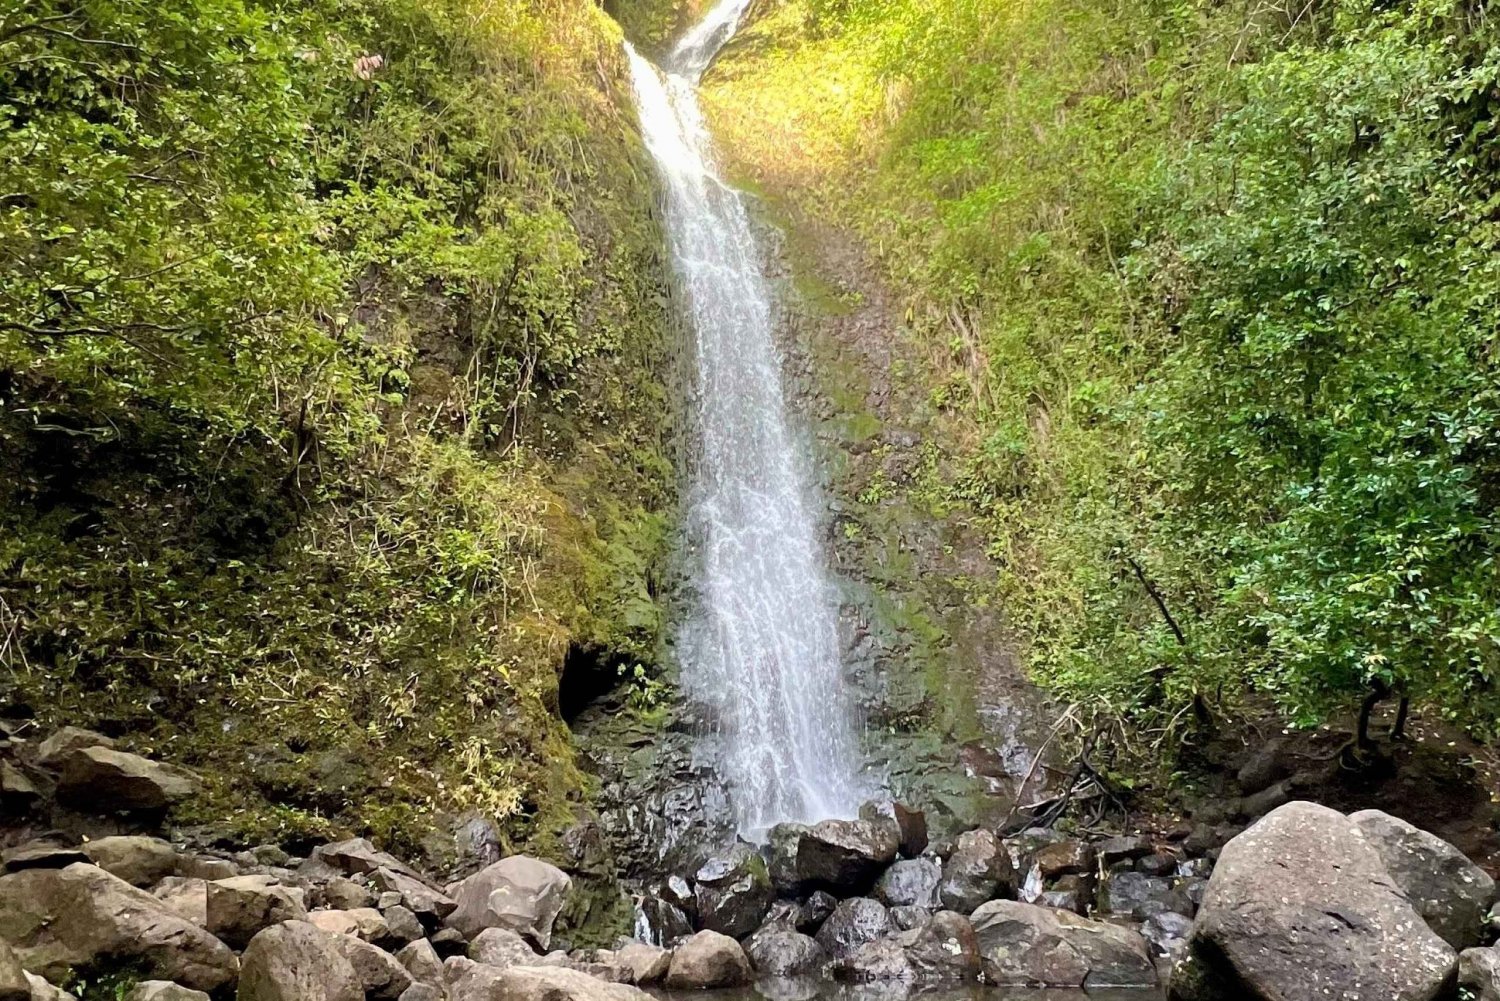 Randonnée - Trempette dans la cascade, sentiers de la forêt tropicale (prise en charge)